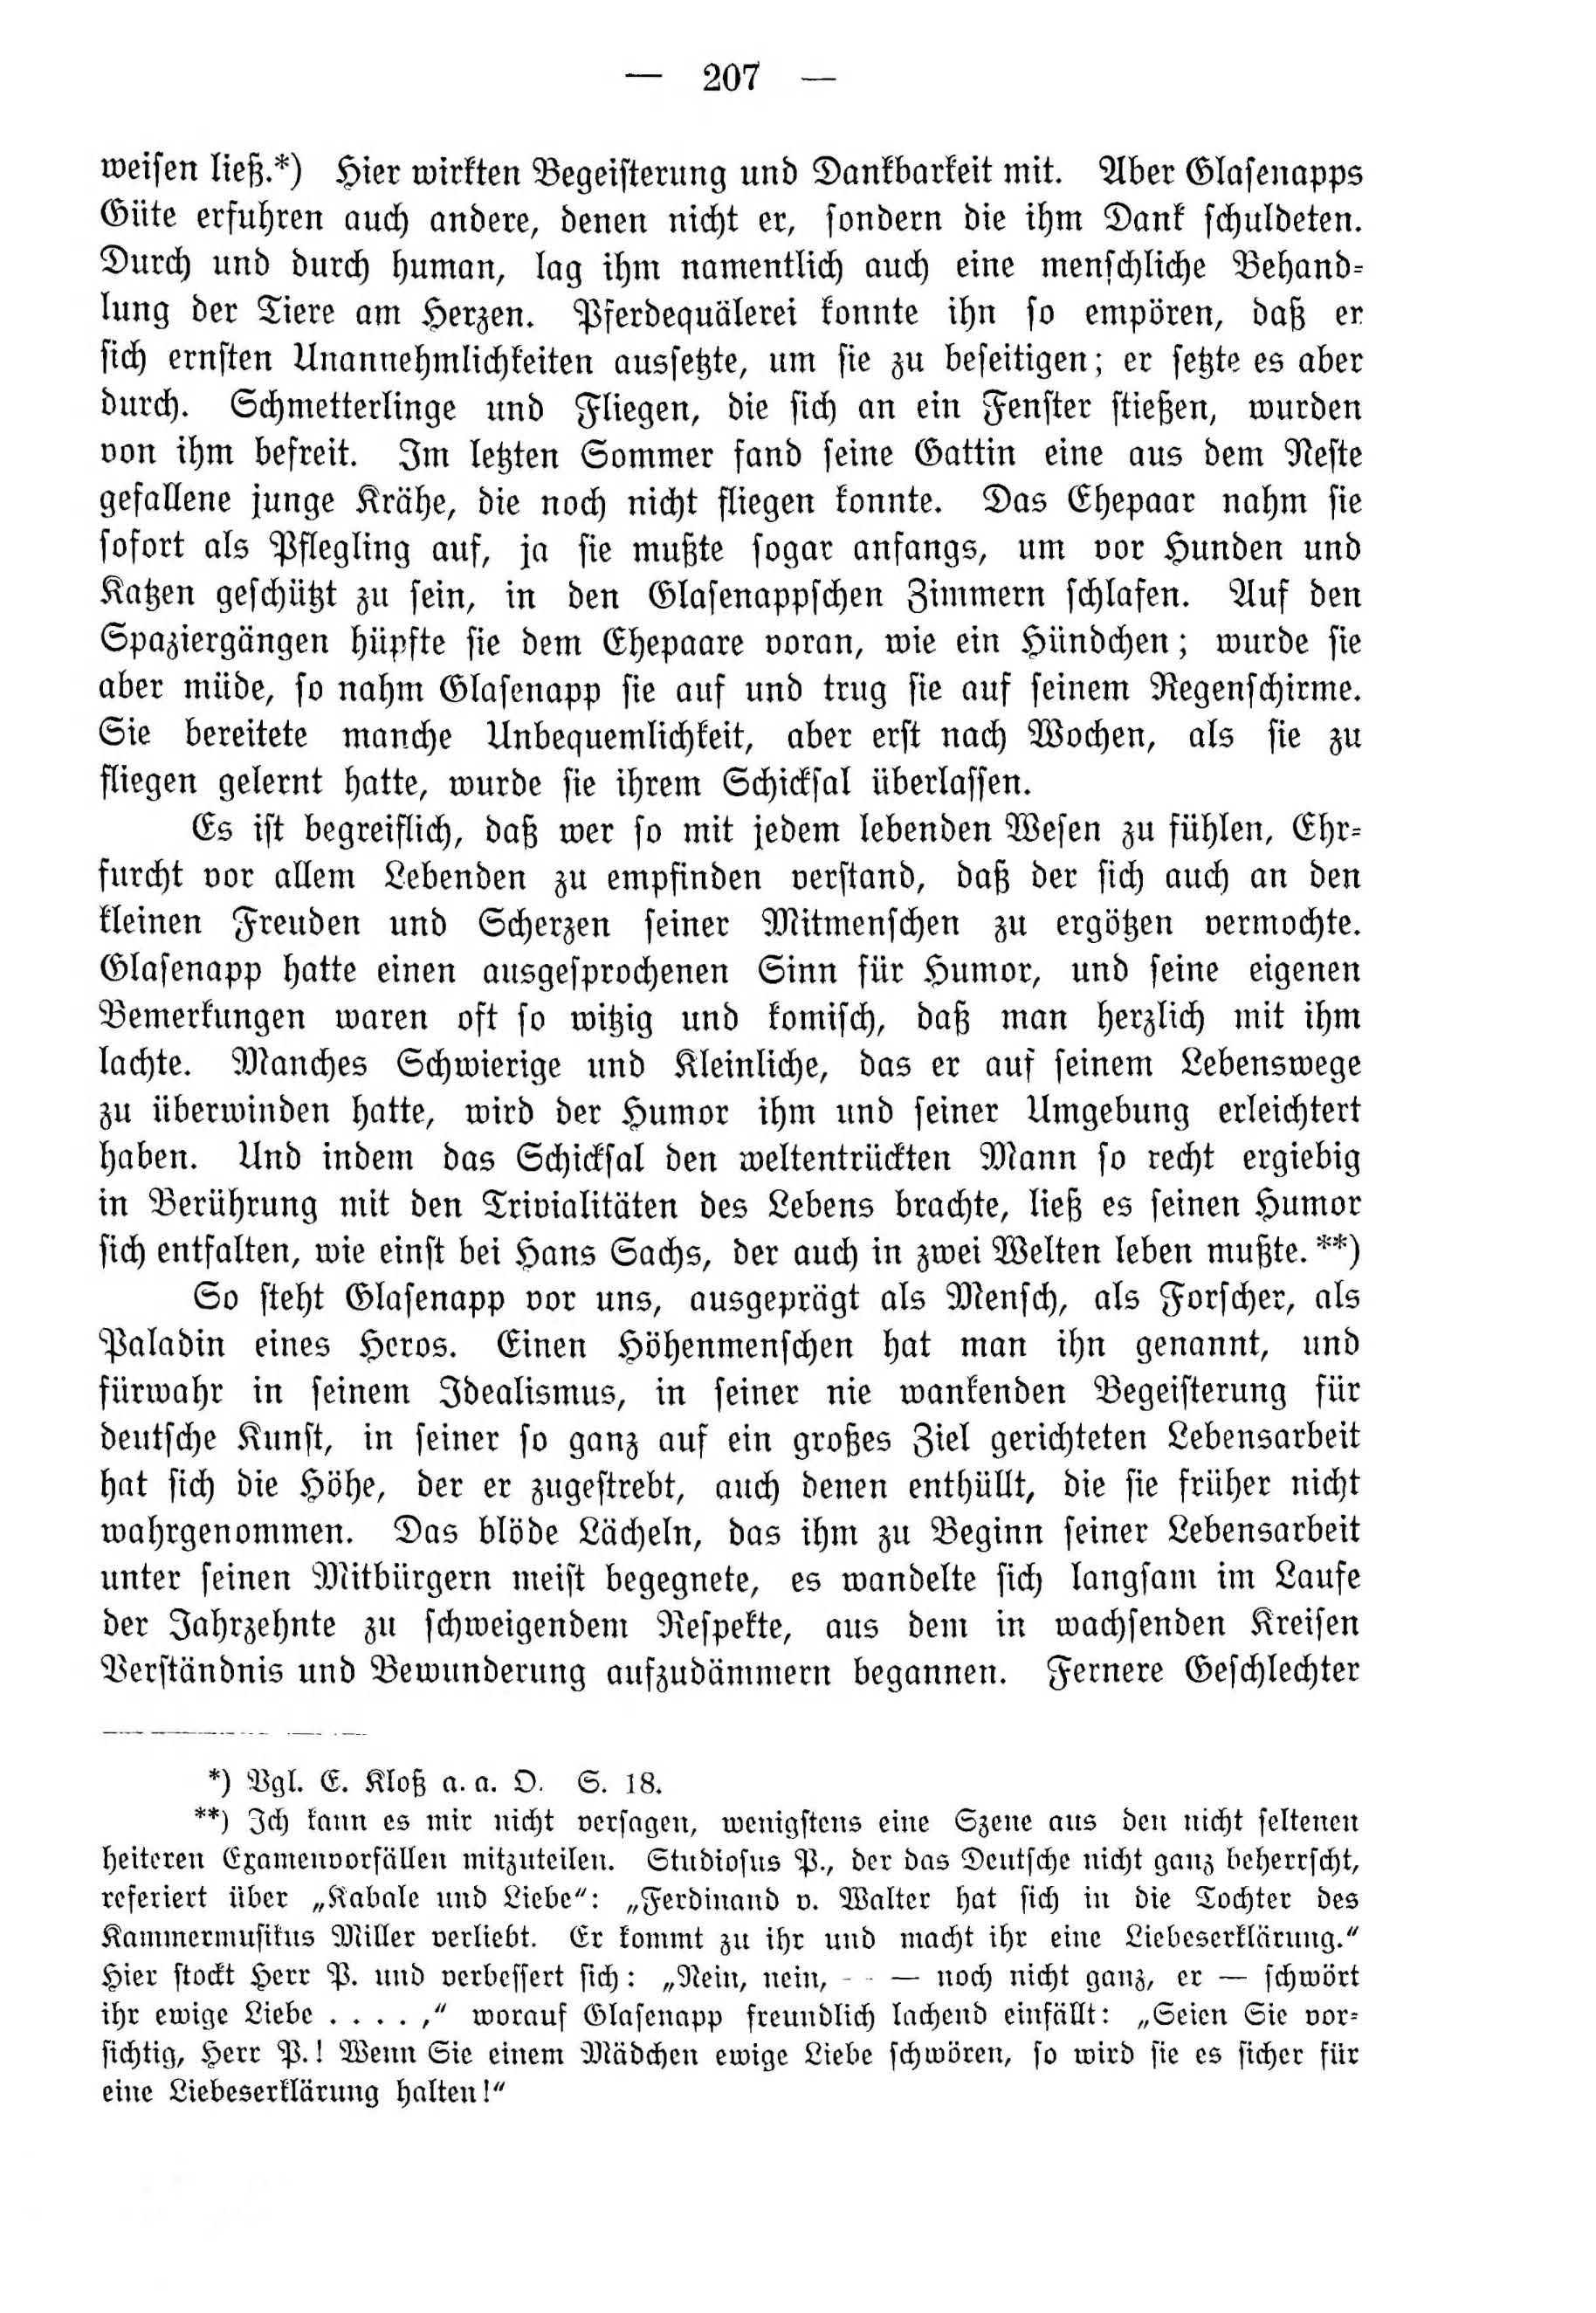 Deutsche Monatsschrift für Russland [4] (1915) | 207. (207) Основной текст